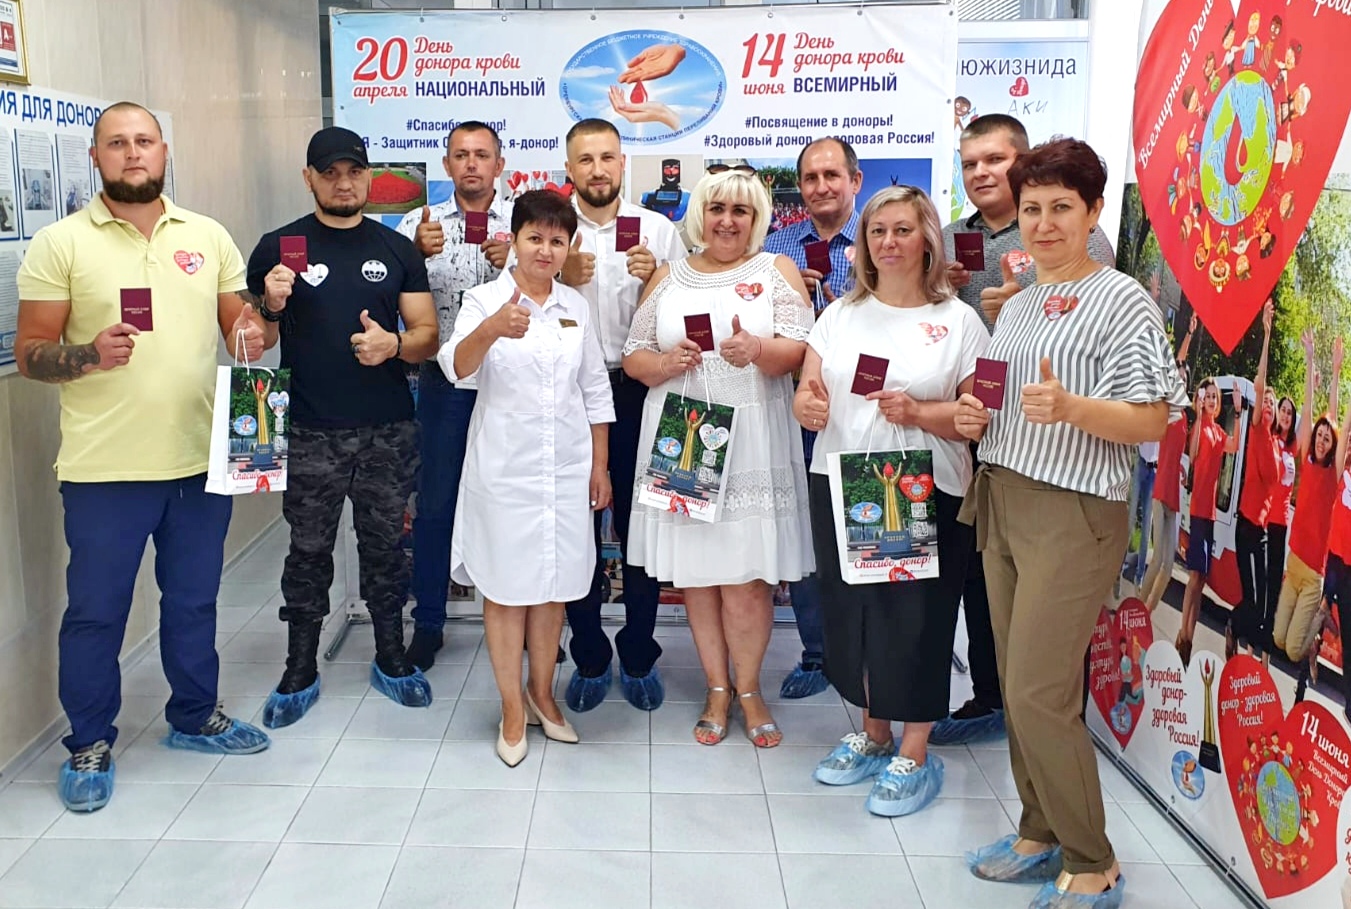 Активисты донорского движения Оренбуржья получили заслуженные награды